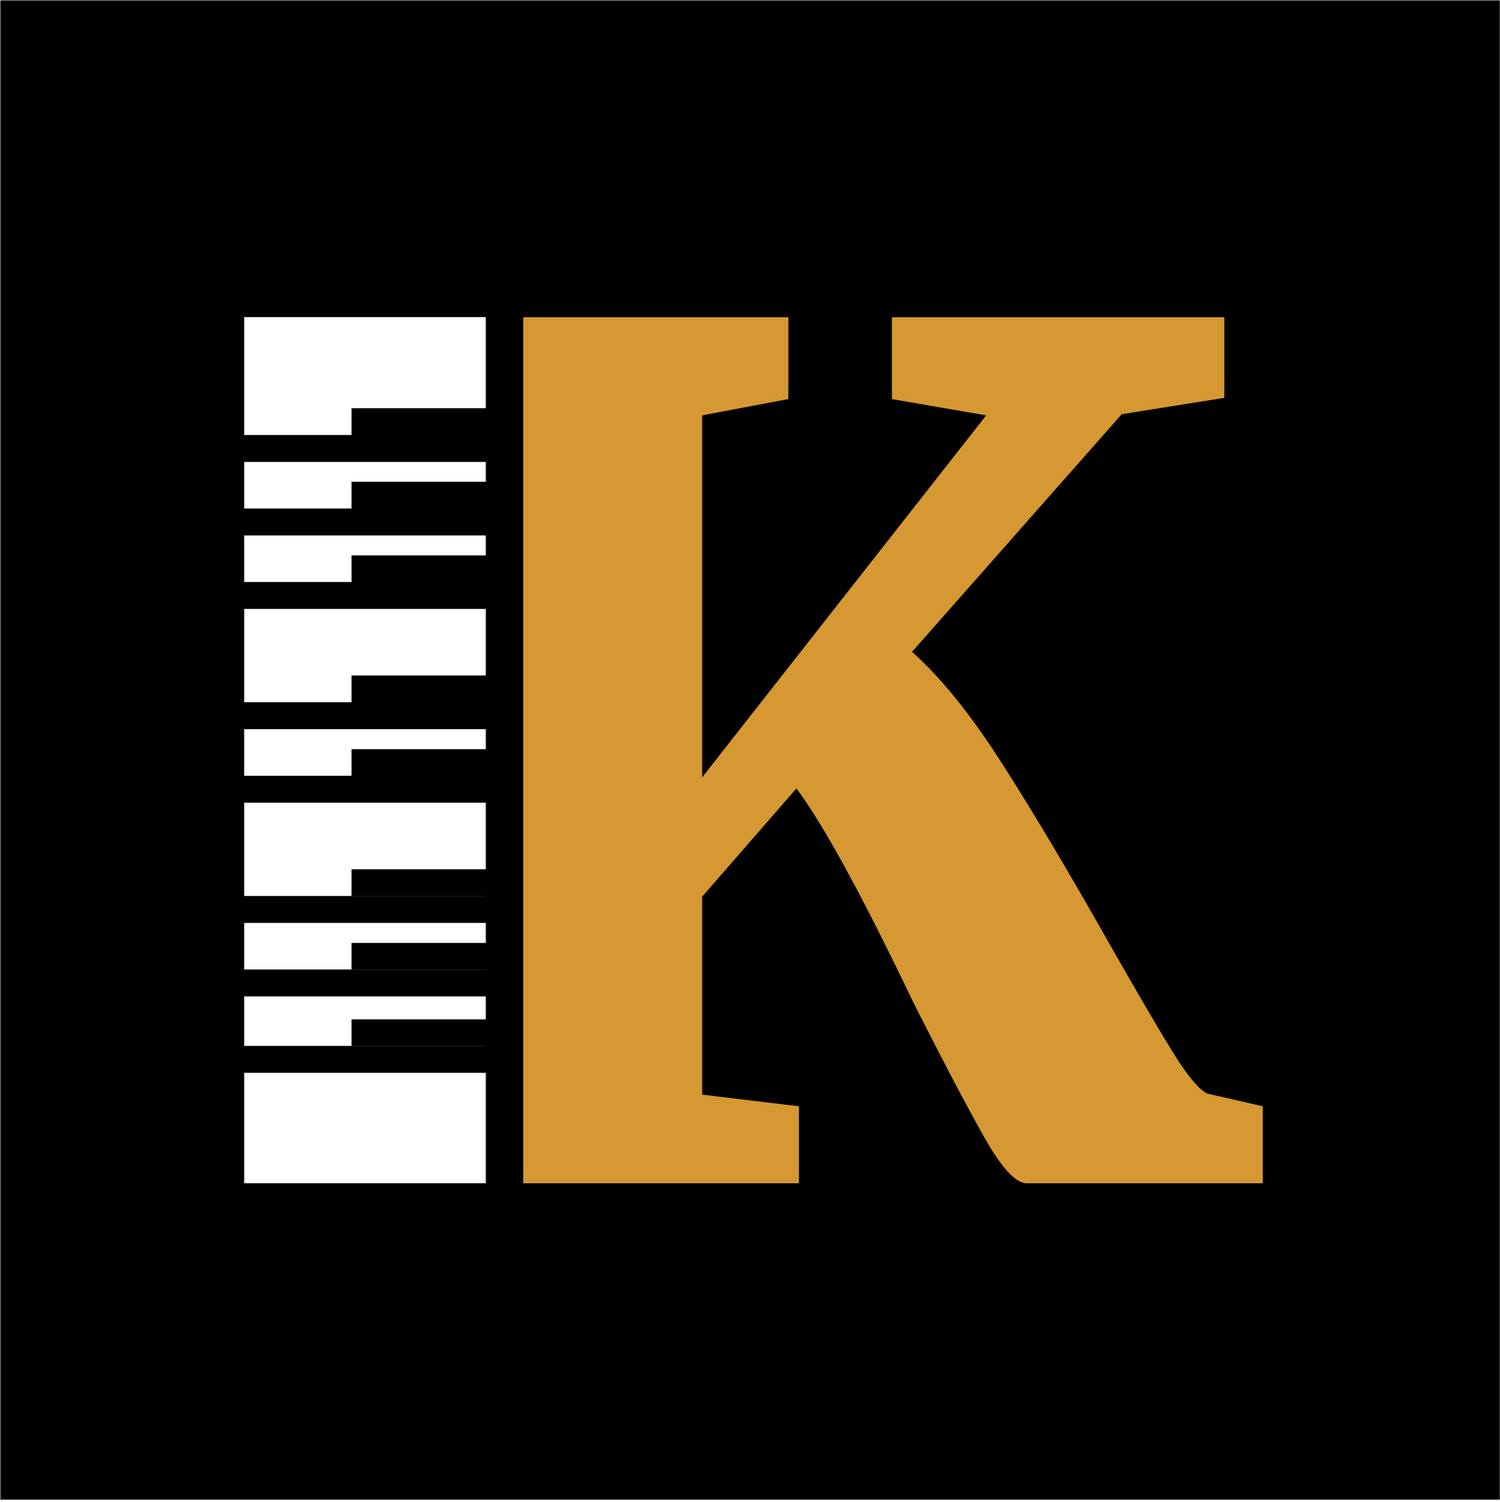 Kevin Kidd Piano Tuning 